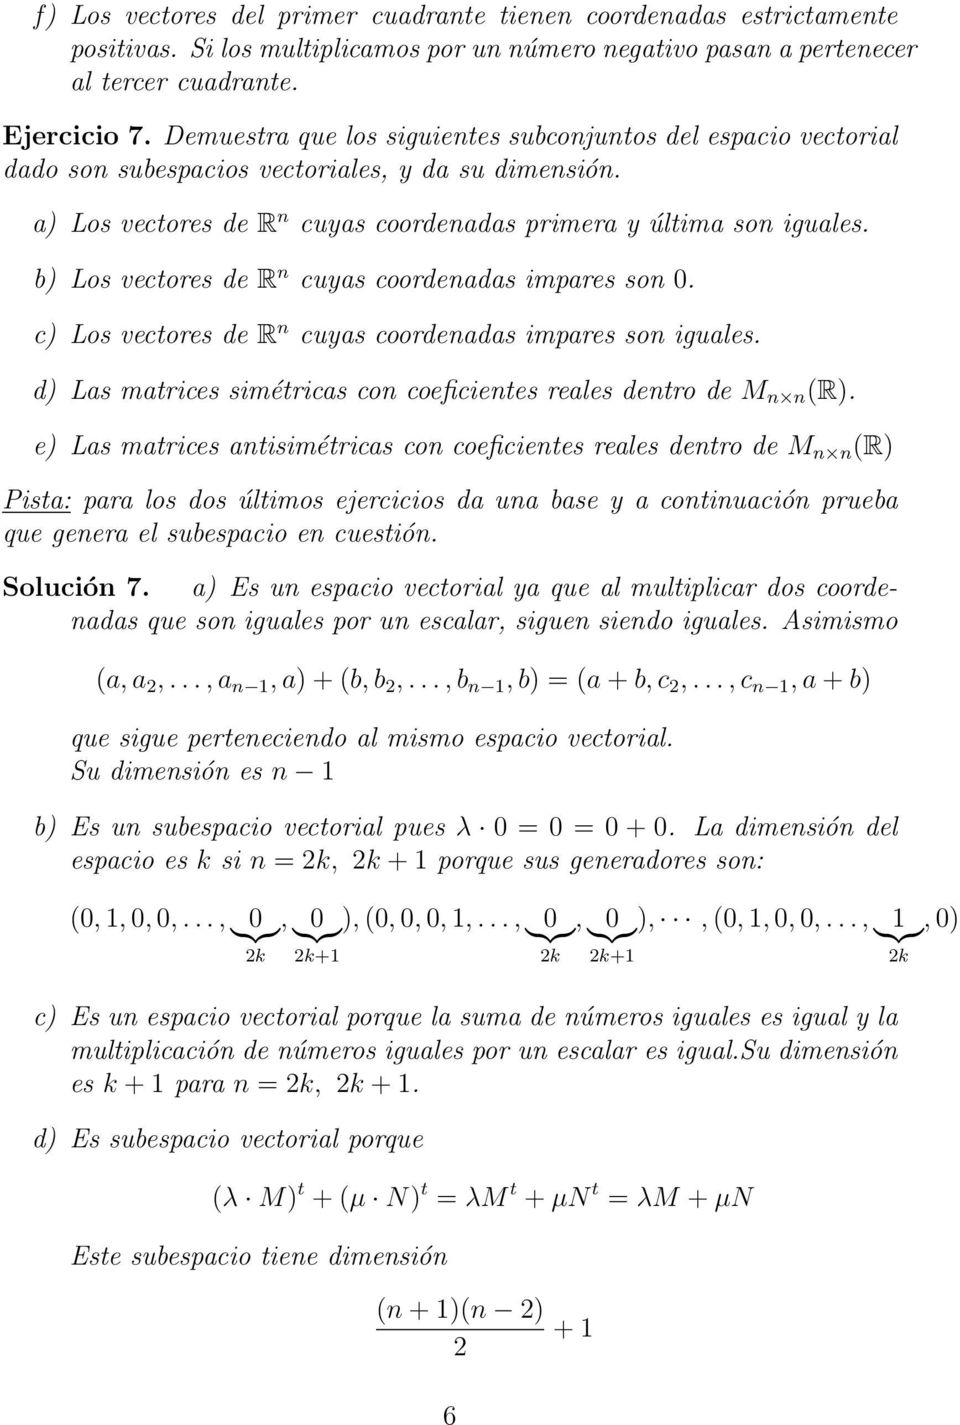 b) Los vectores de R n cuyas coordenadas impares son 0. c) Los vectores de R n cuyas coordenadas impares son iguales. d) Las matrices simétricas con coeficientes reales dentro de M n n (R).